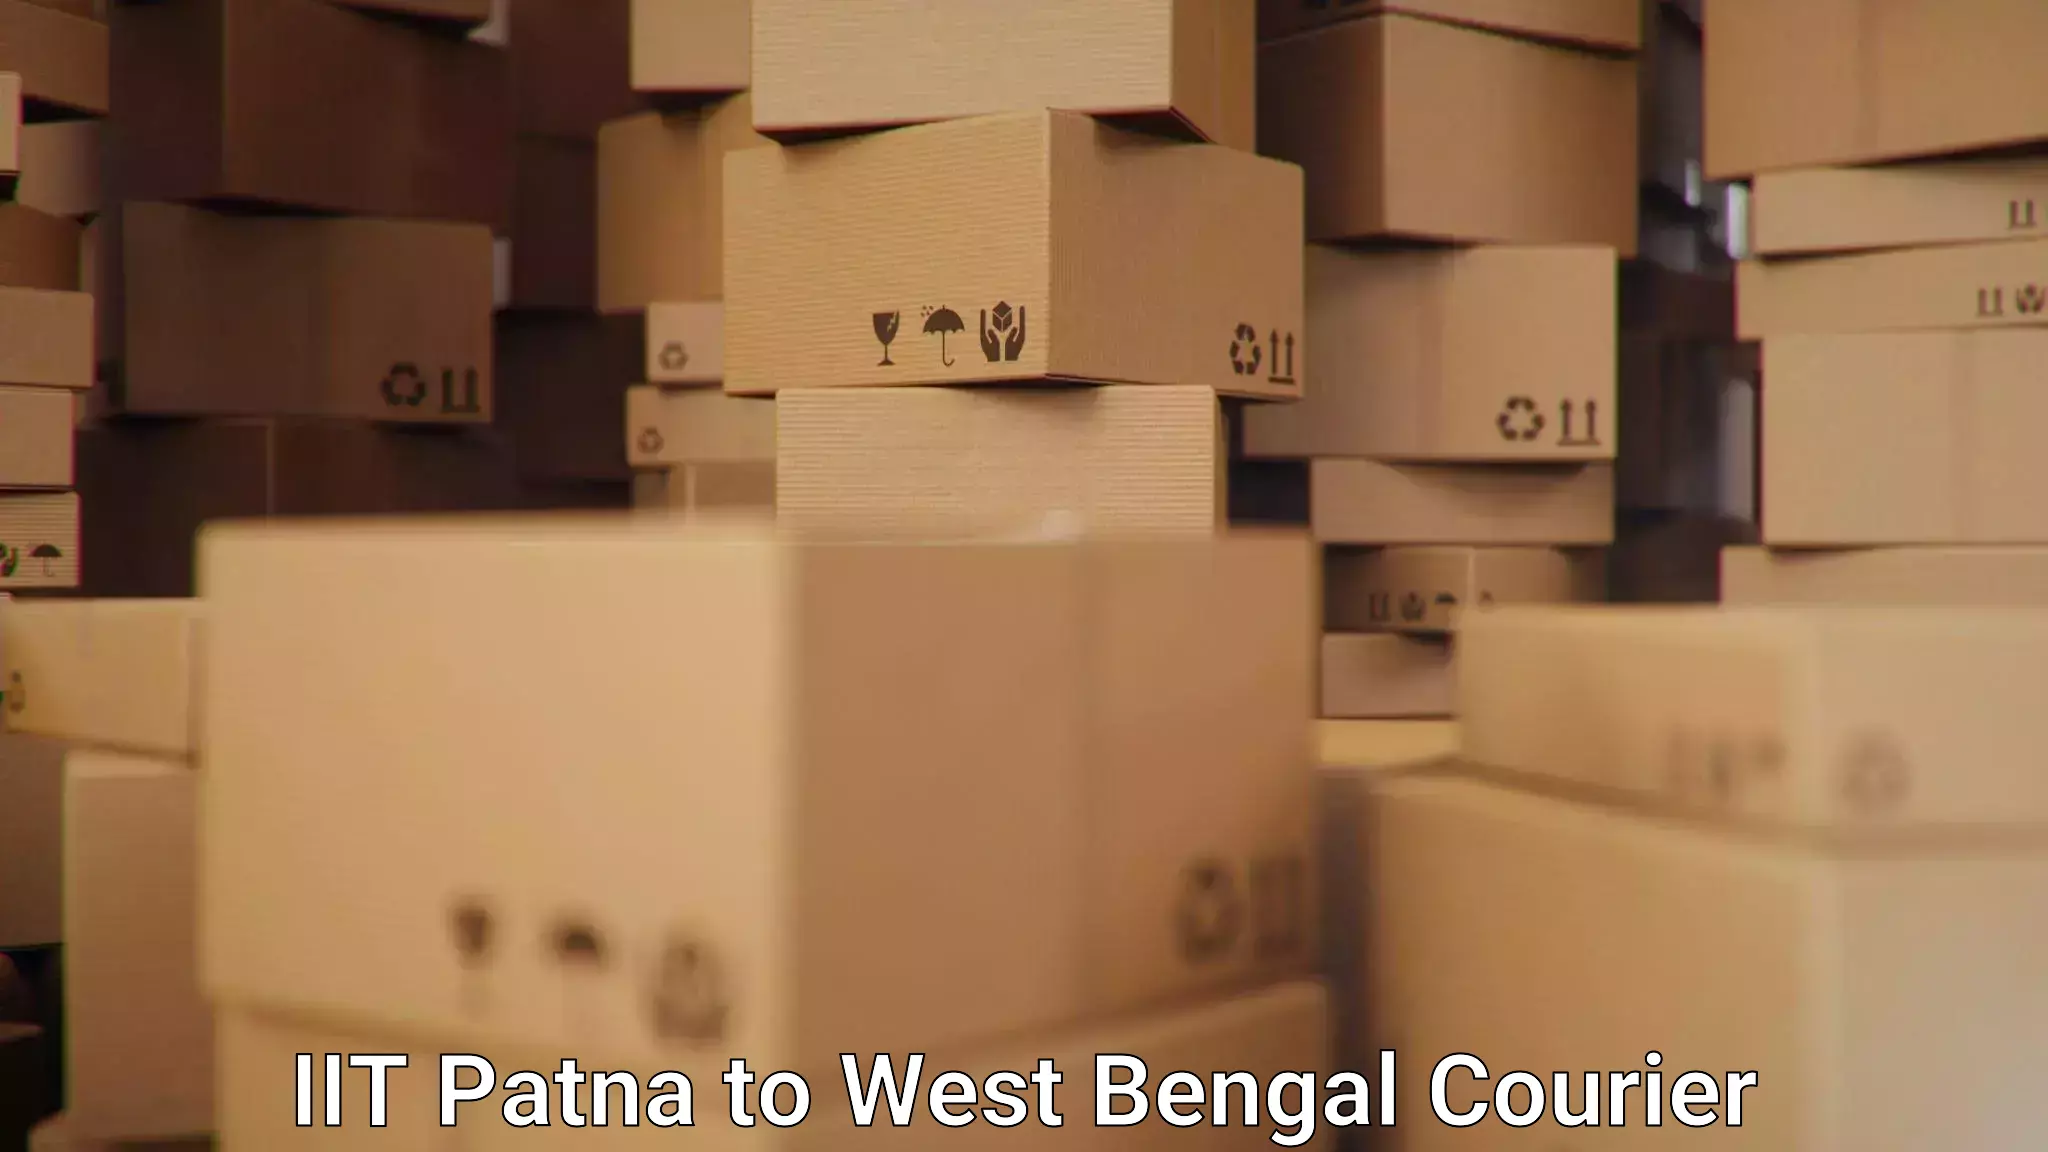 Multi-service courier options IIT Patna to Jadavpur University Kolkata